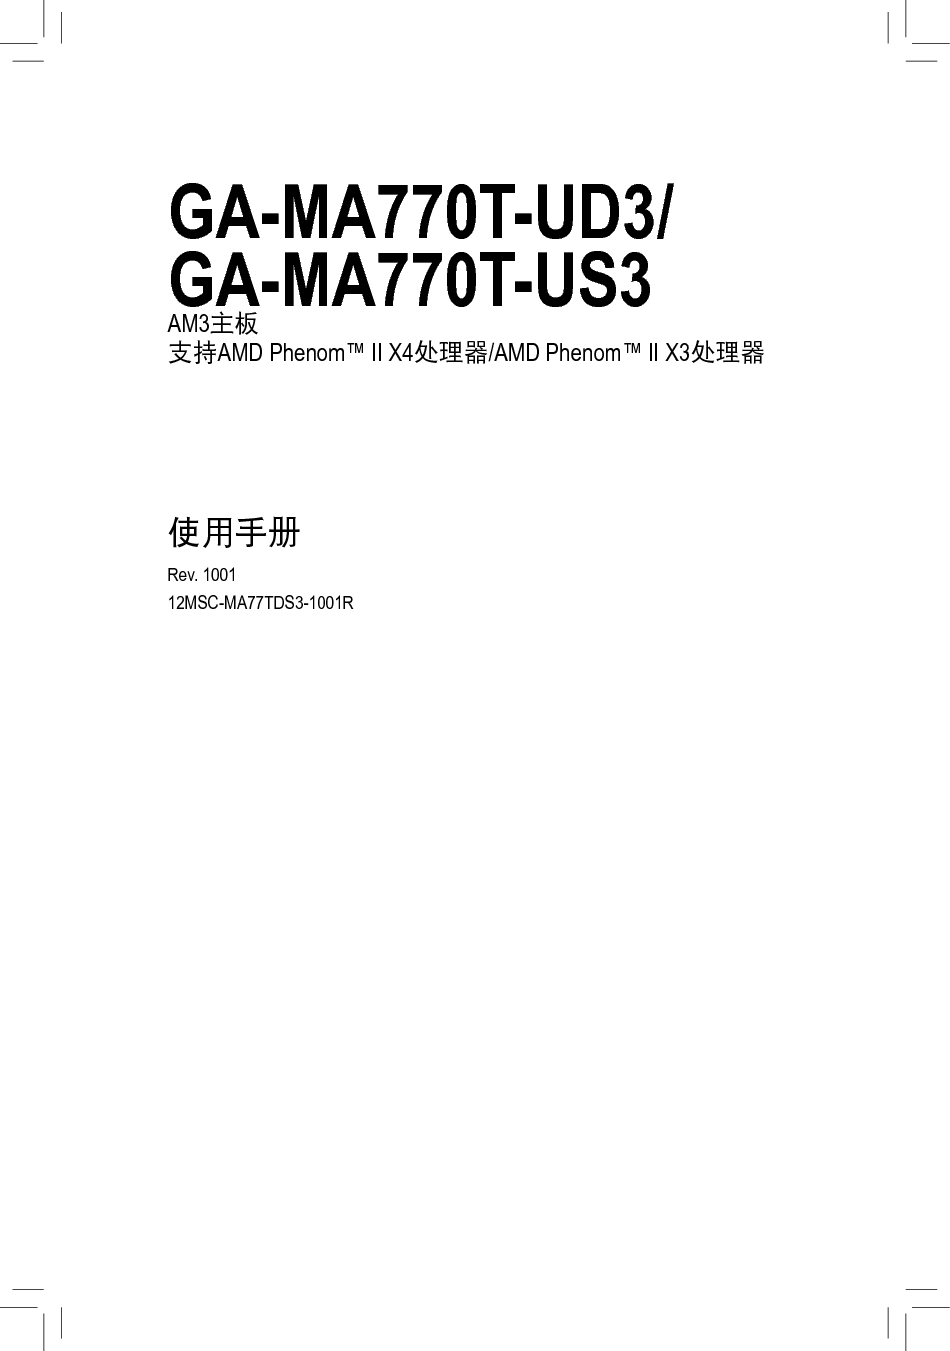 技嘉 Gigabyte GA-MA770T-UD3 1001版 使用手册 封面